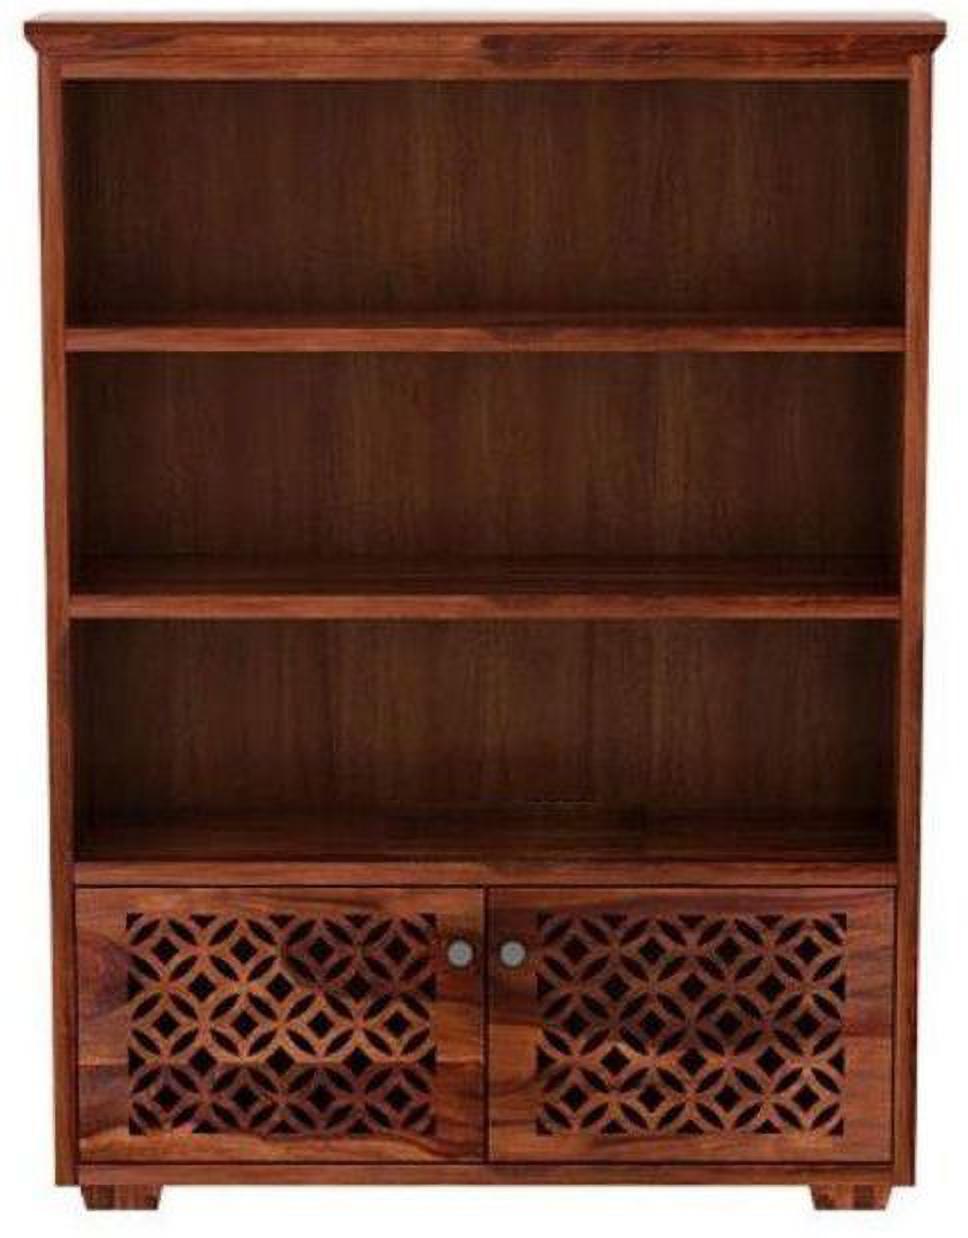 Aaram By Zebrs Display Unit Book Shelves for Living Room Cabinet Storage Solid Wood Close Book Shelf (Finish Color - Teak, Pre-assembled)